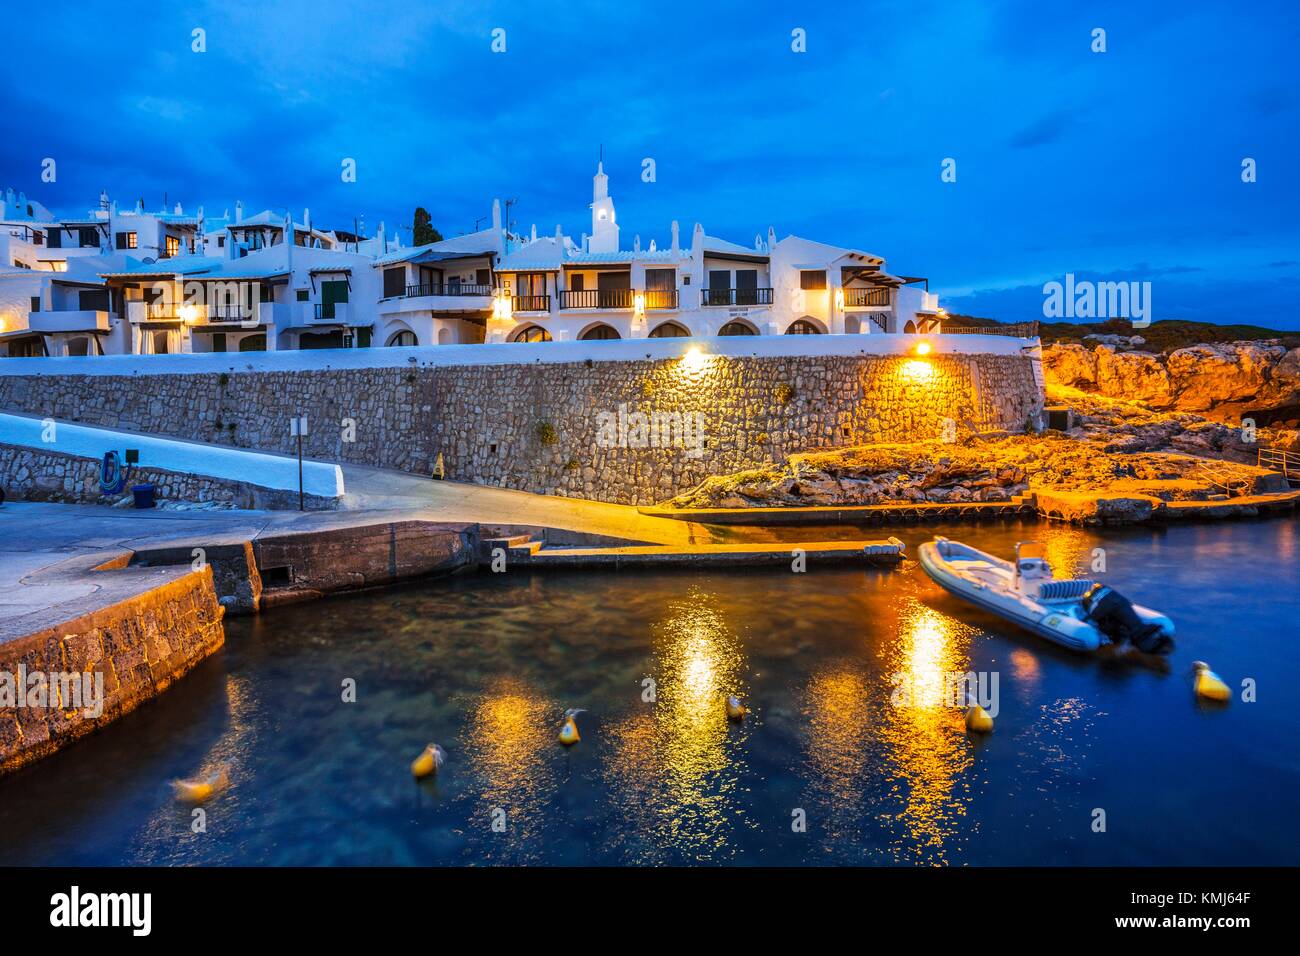 Binibequer Vell Fisherman's Village. Es ist ein touristisches Zentrum. Sant Lluis Gemeinde. Menorca. Balearen. Spanien Stockfoto